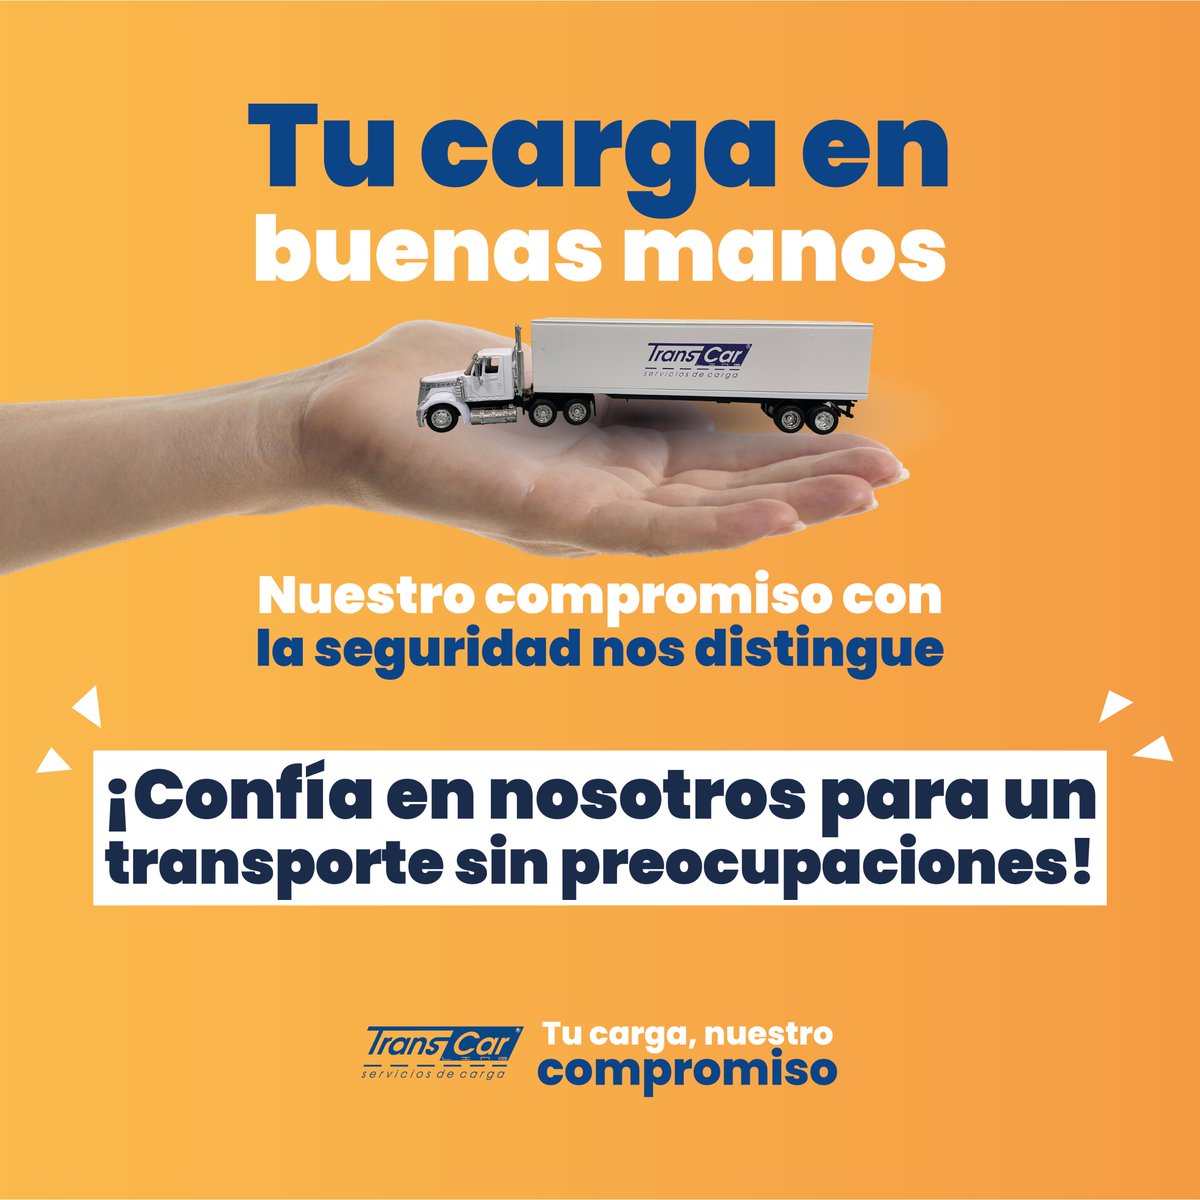 🔷Tu carga en buenas manos. Nuestro compromiso con la seguridad nos distingue. 
#equipotranscar #serviciosdecarga #transportedecarga